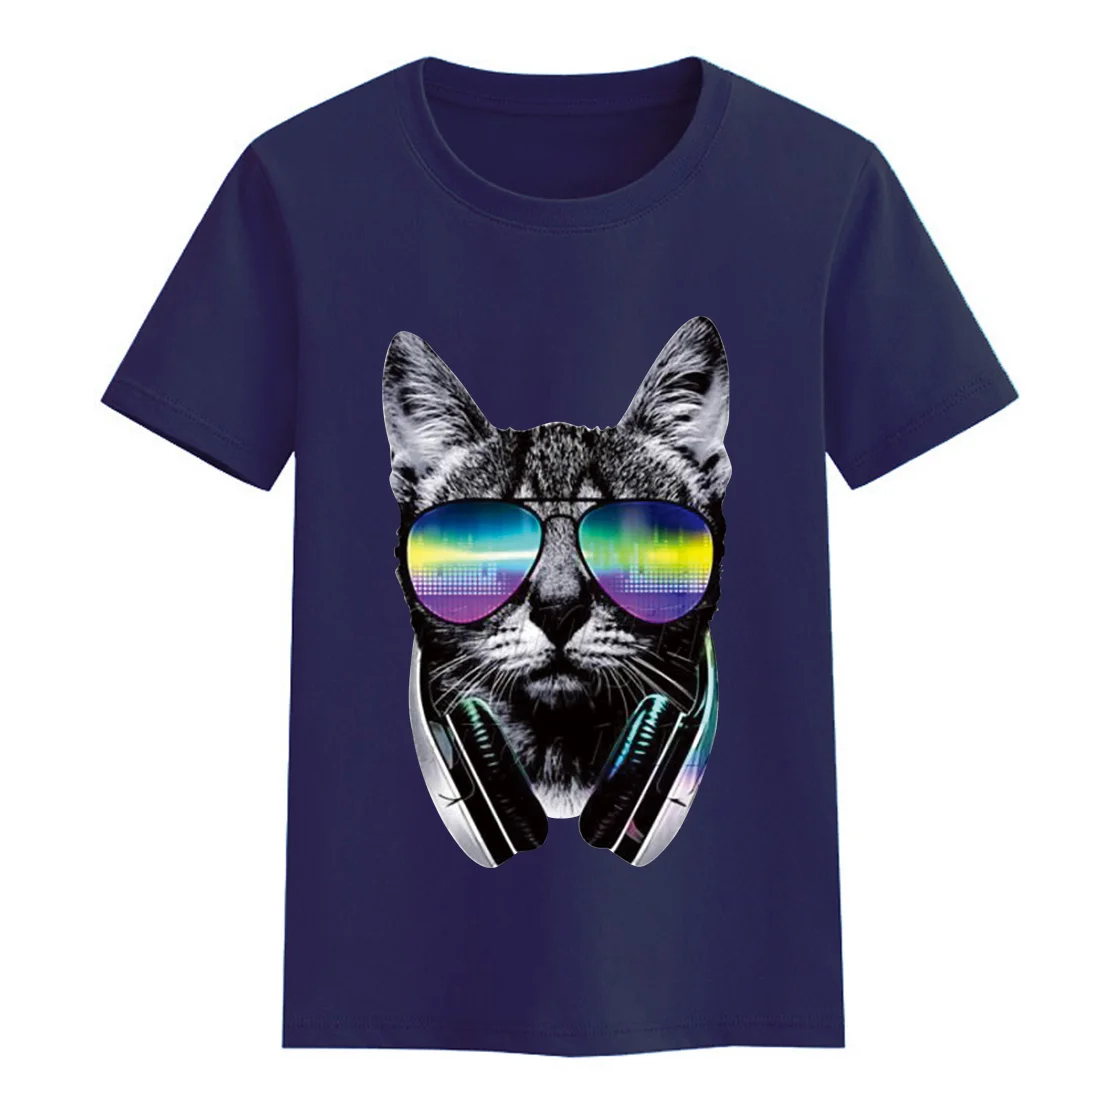 Новинка года, модная летняя футболка с короткими рукавами, хлопок, высокое качество забавная футболка для мальчиков и девочек с изображением кота, диджея футболки, футболки